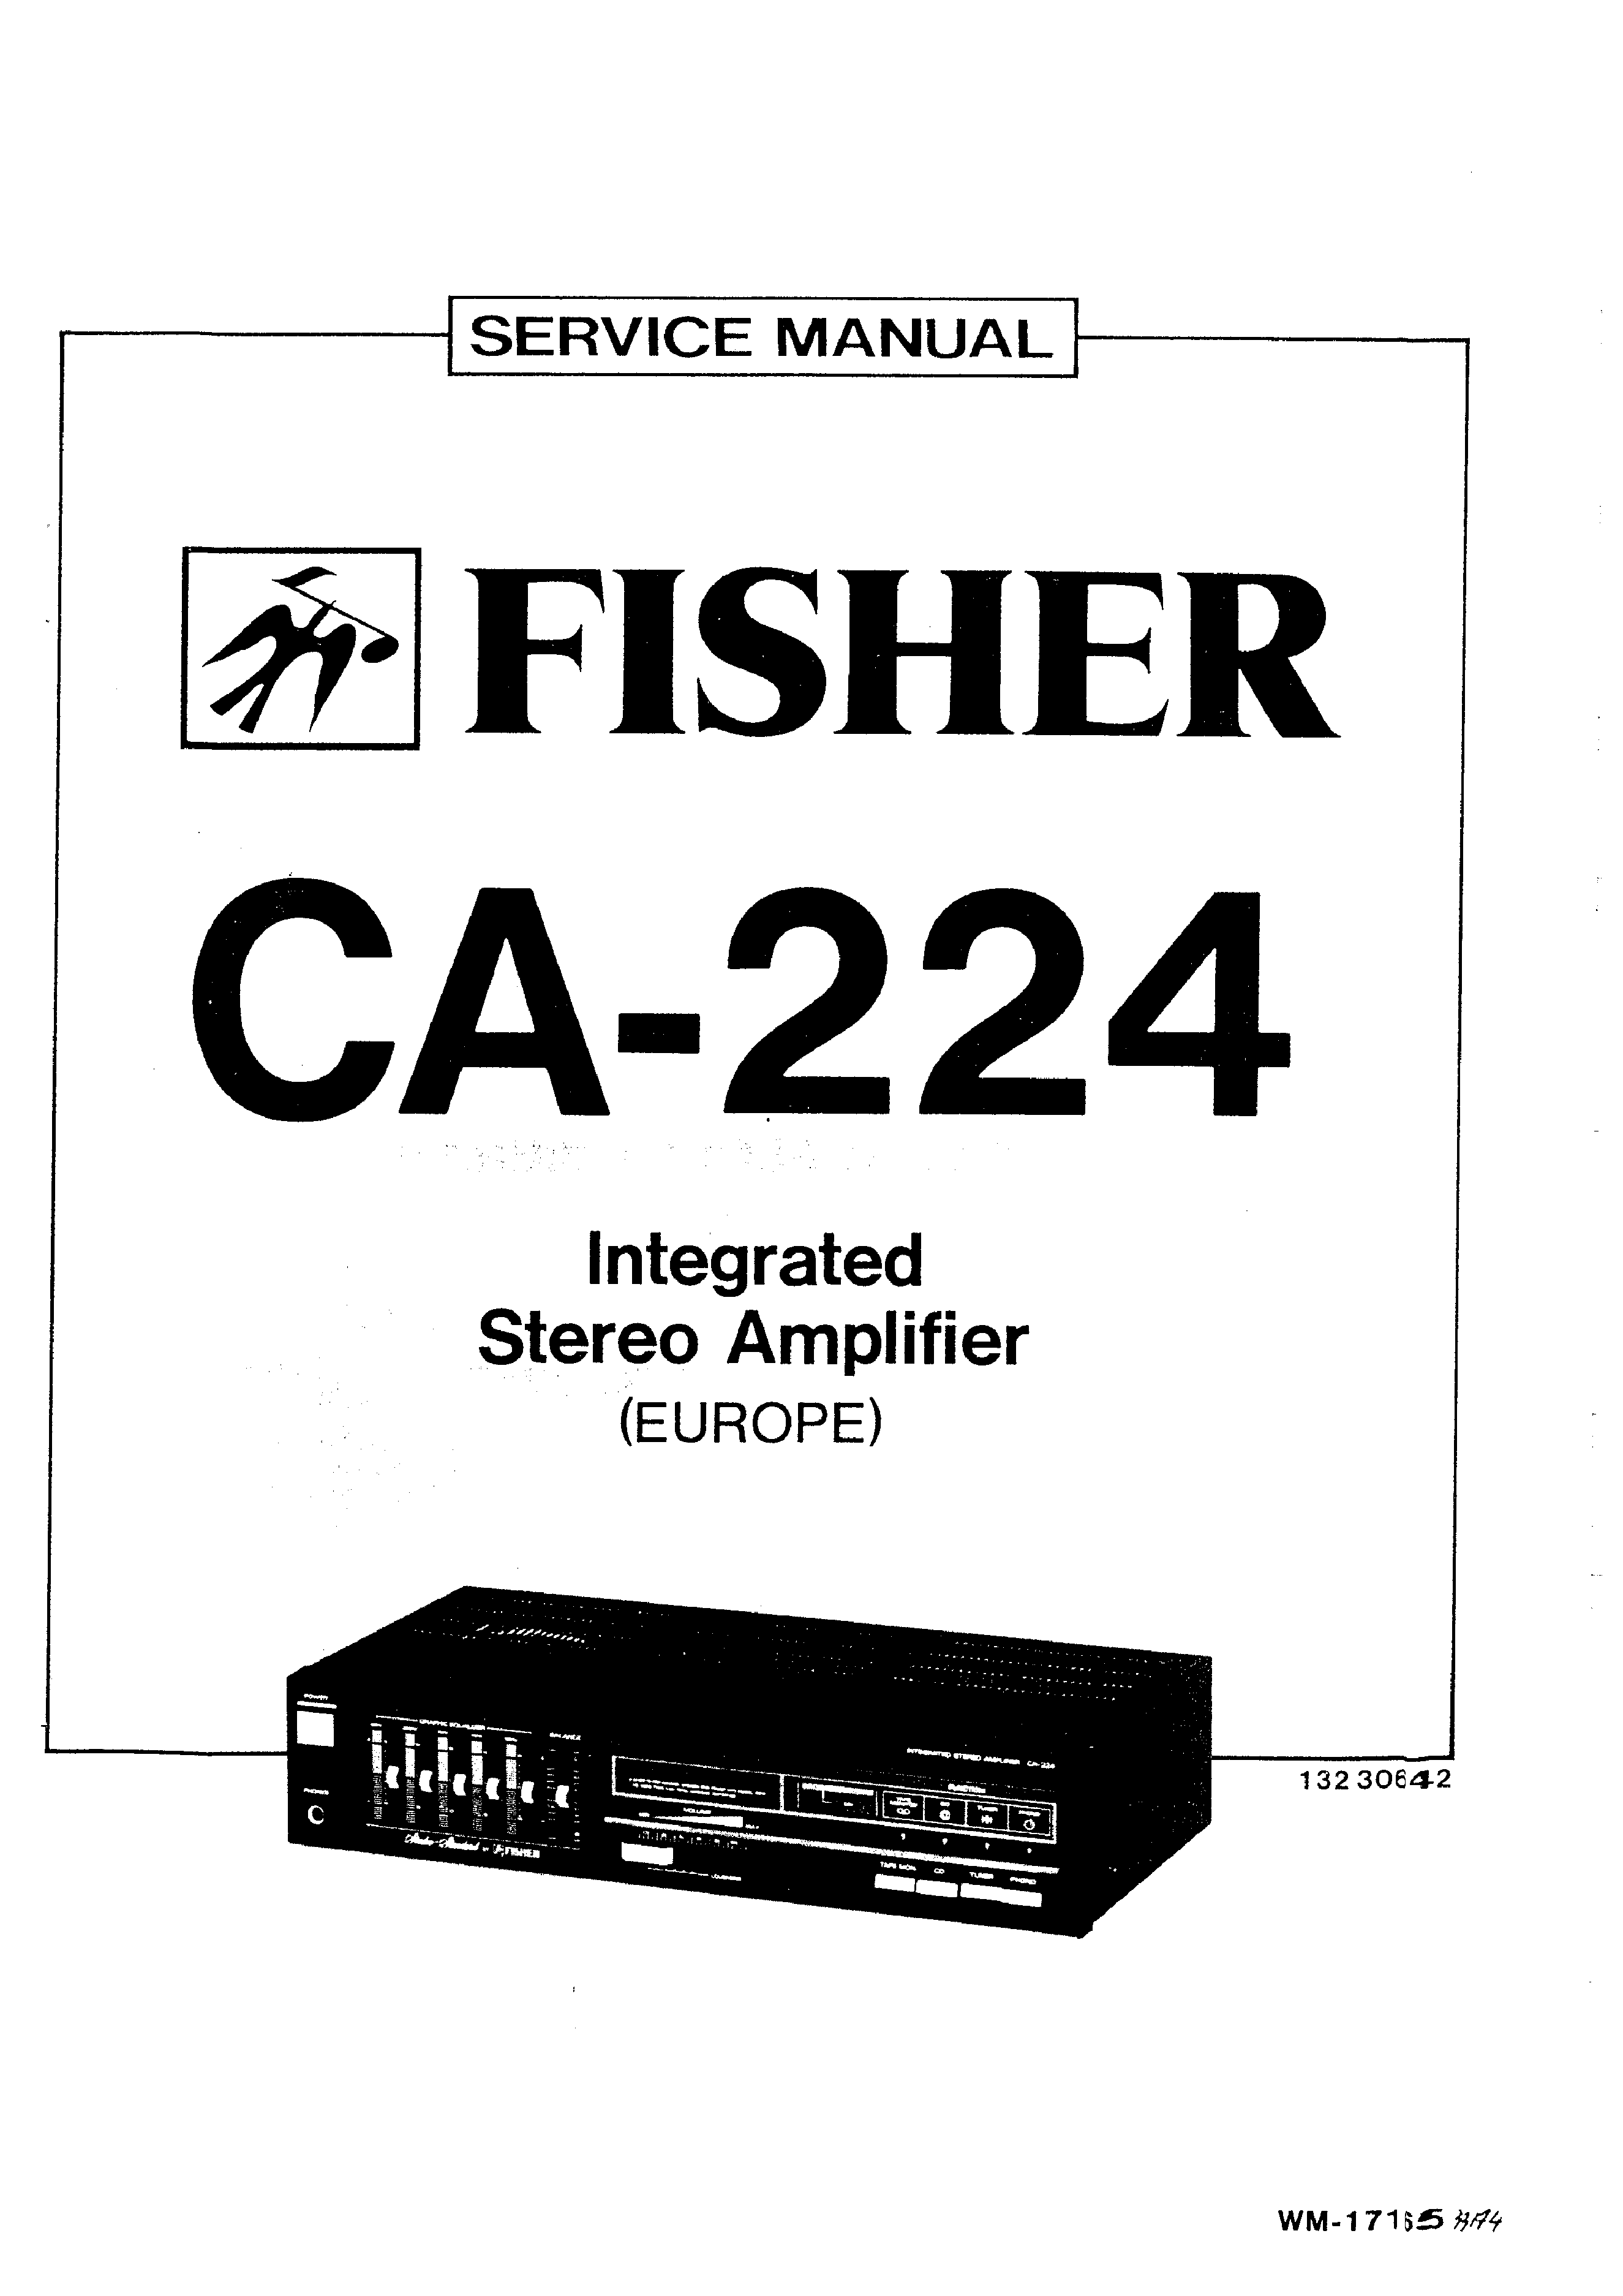 FISHER CA-224 - Service Manual Immediate Download